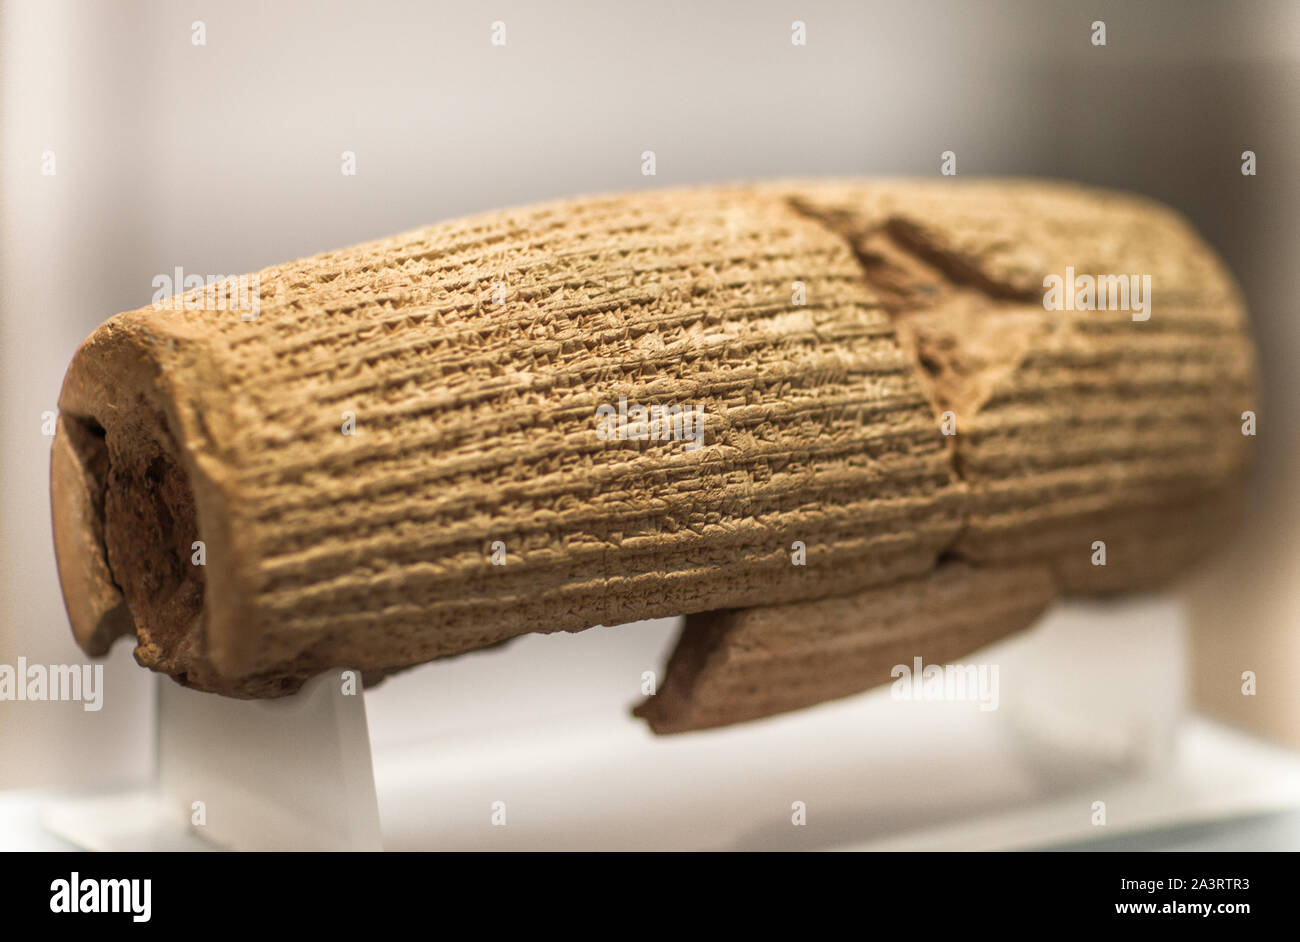 Il cilindro di Ciro con scrittura cuneiforme babilonese script, dalla metà del 6o secolo A.C. Impero achemenide. Il British Museum di Londra, Inghilterra Foto Stock